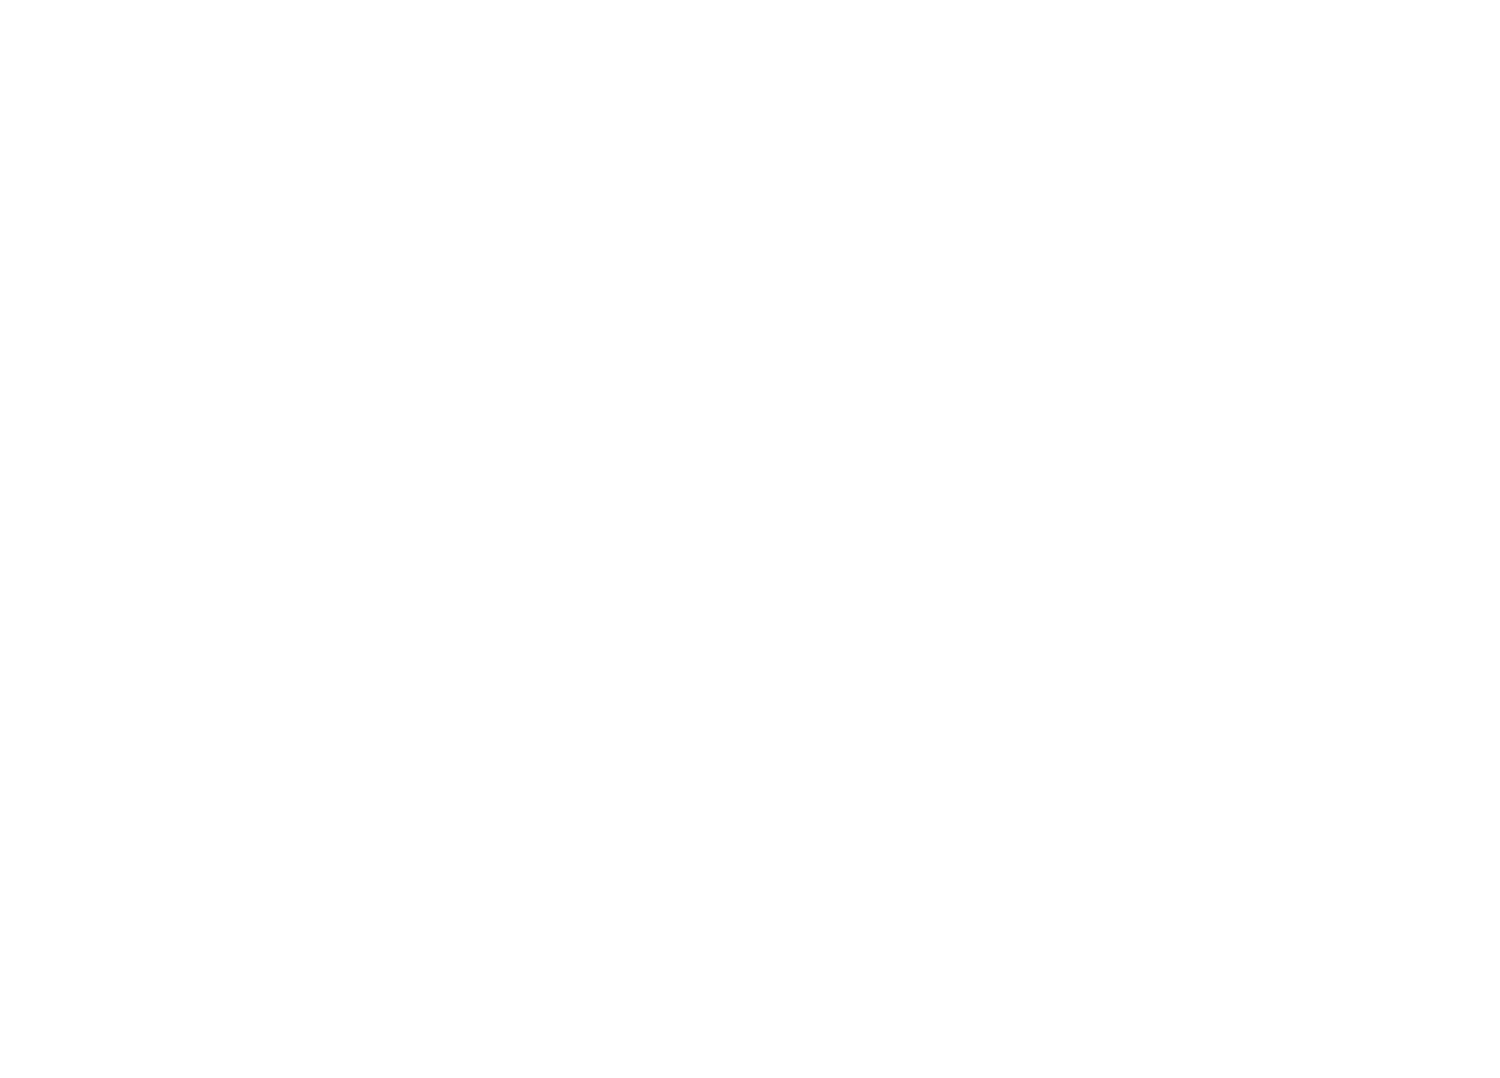 Stamina Racing Collective